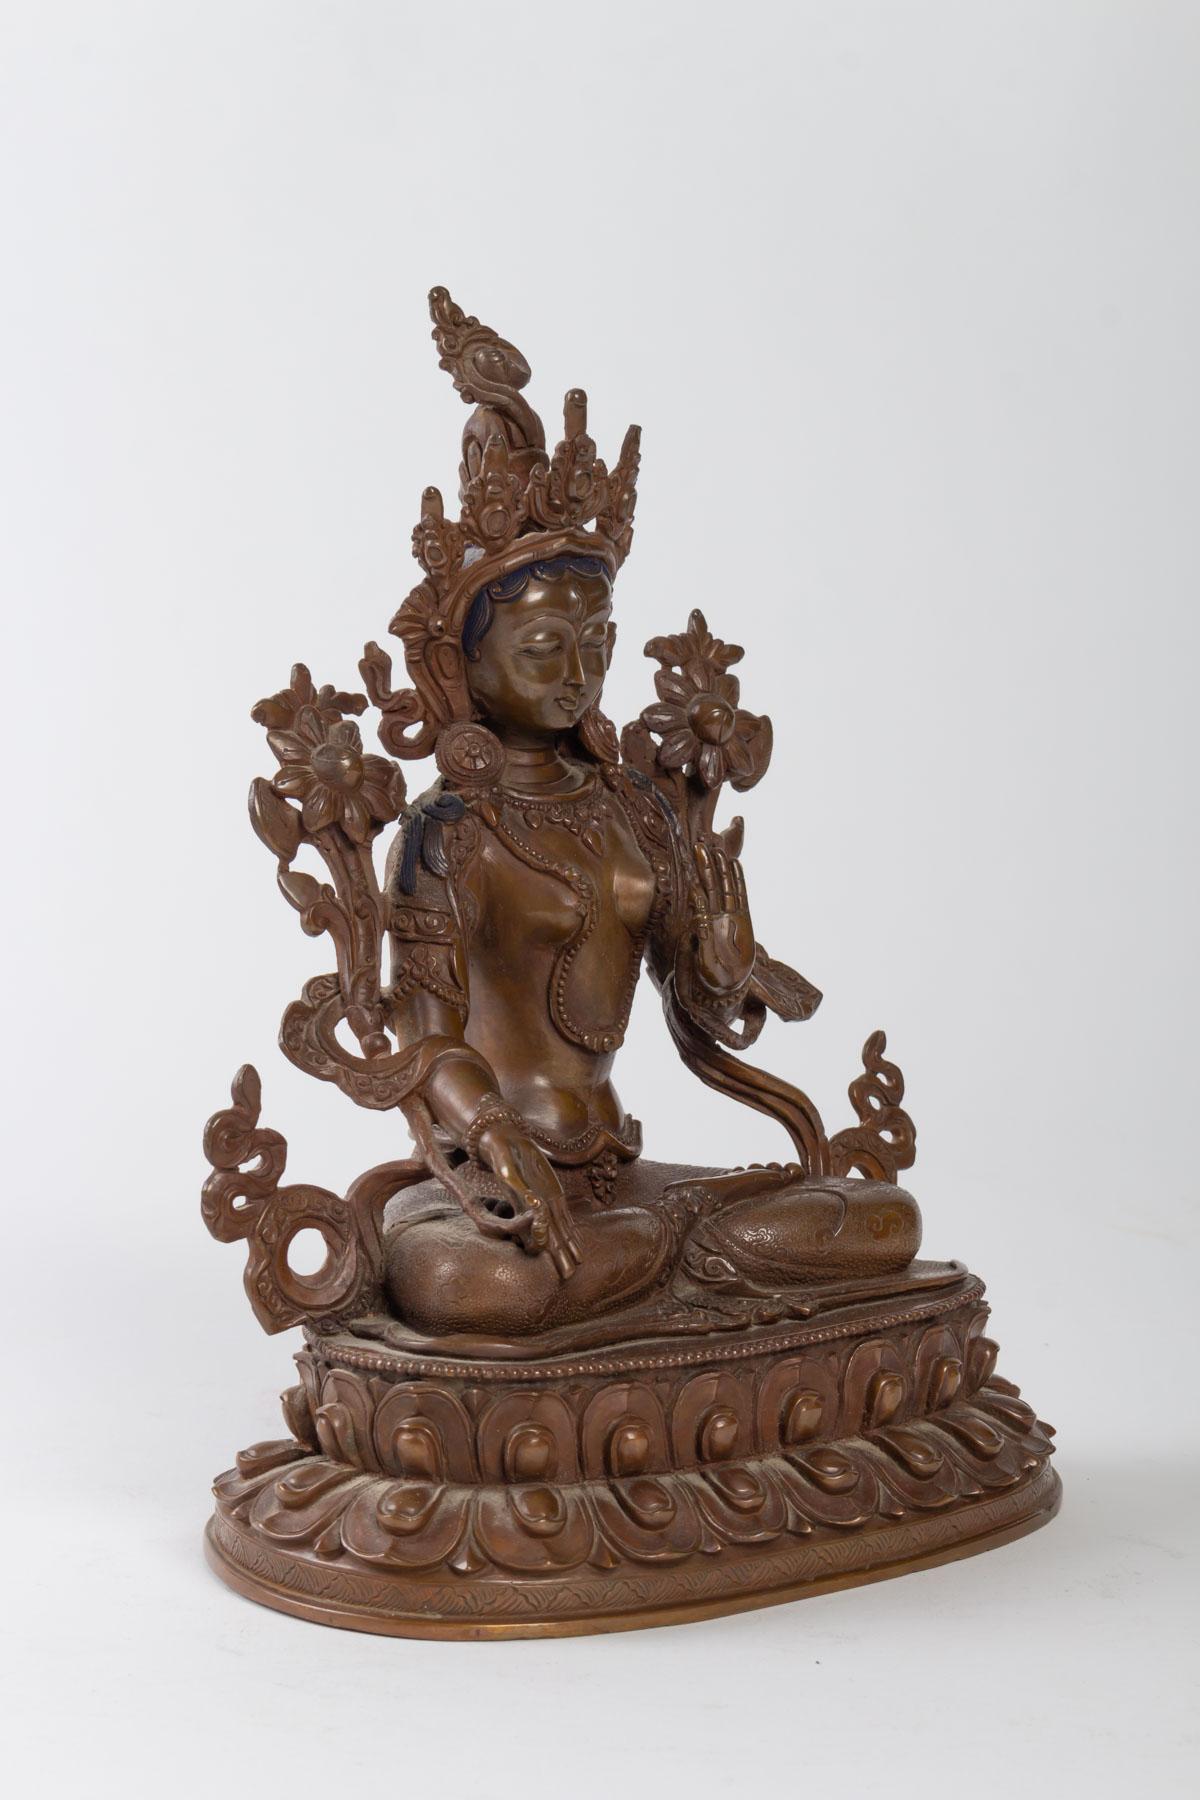 Skulptur Indische Göttin aus patinierter Bronze, schöne Ziselierung, Anfang 20. Jahrhundert.

Maße: H 23 cm, B 18 cm, T 12 cm.
 